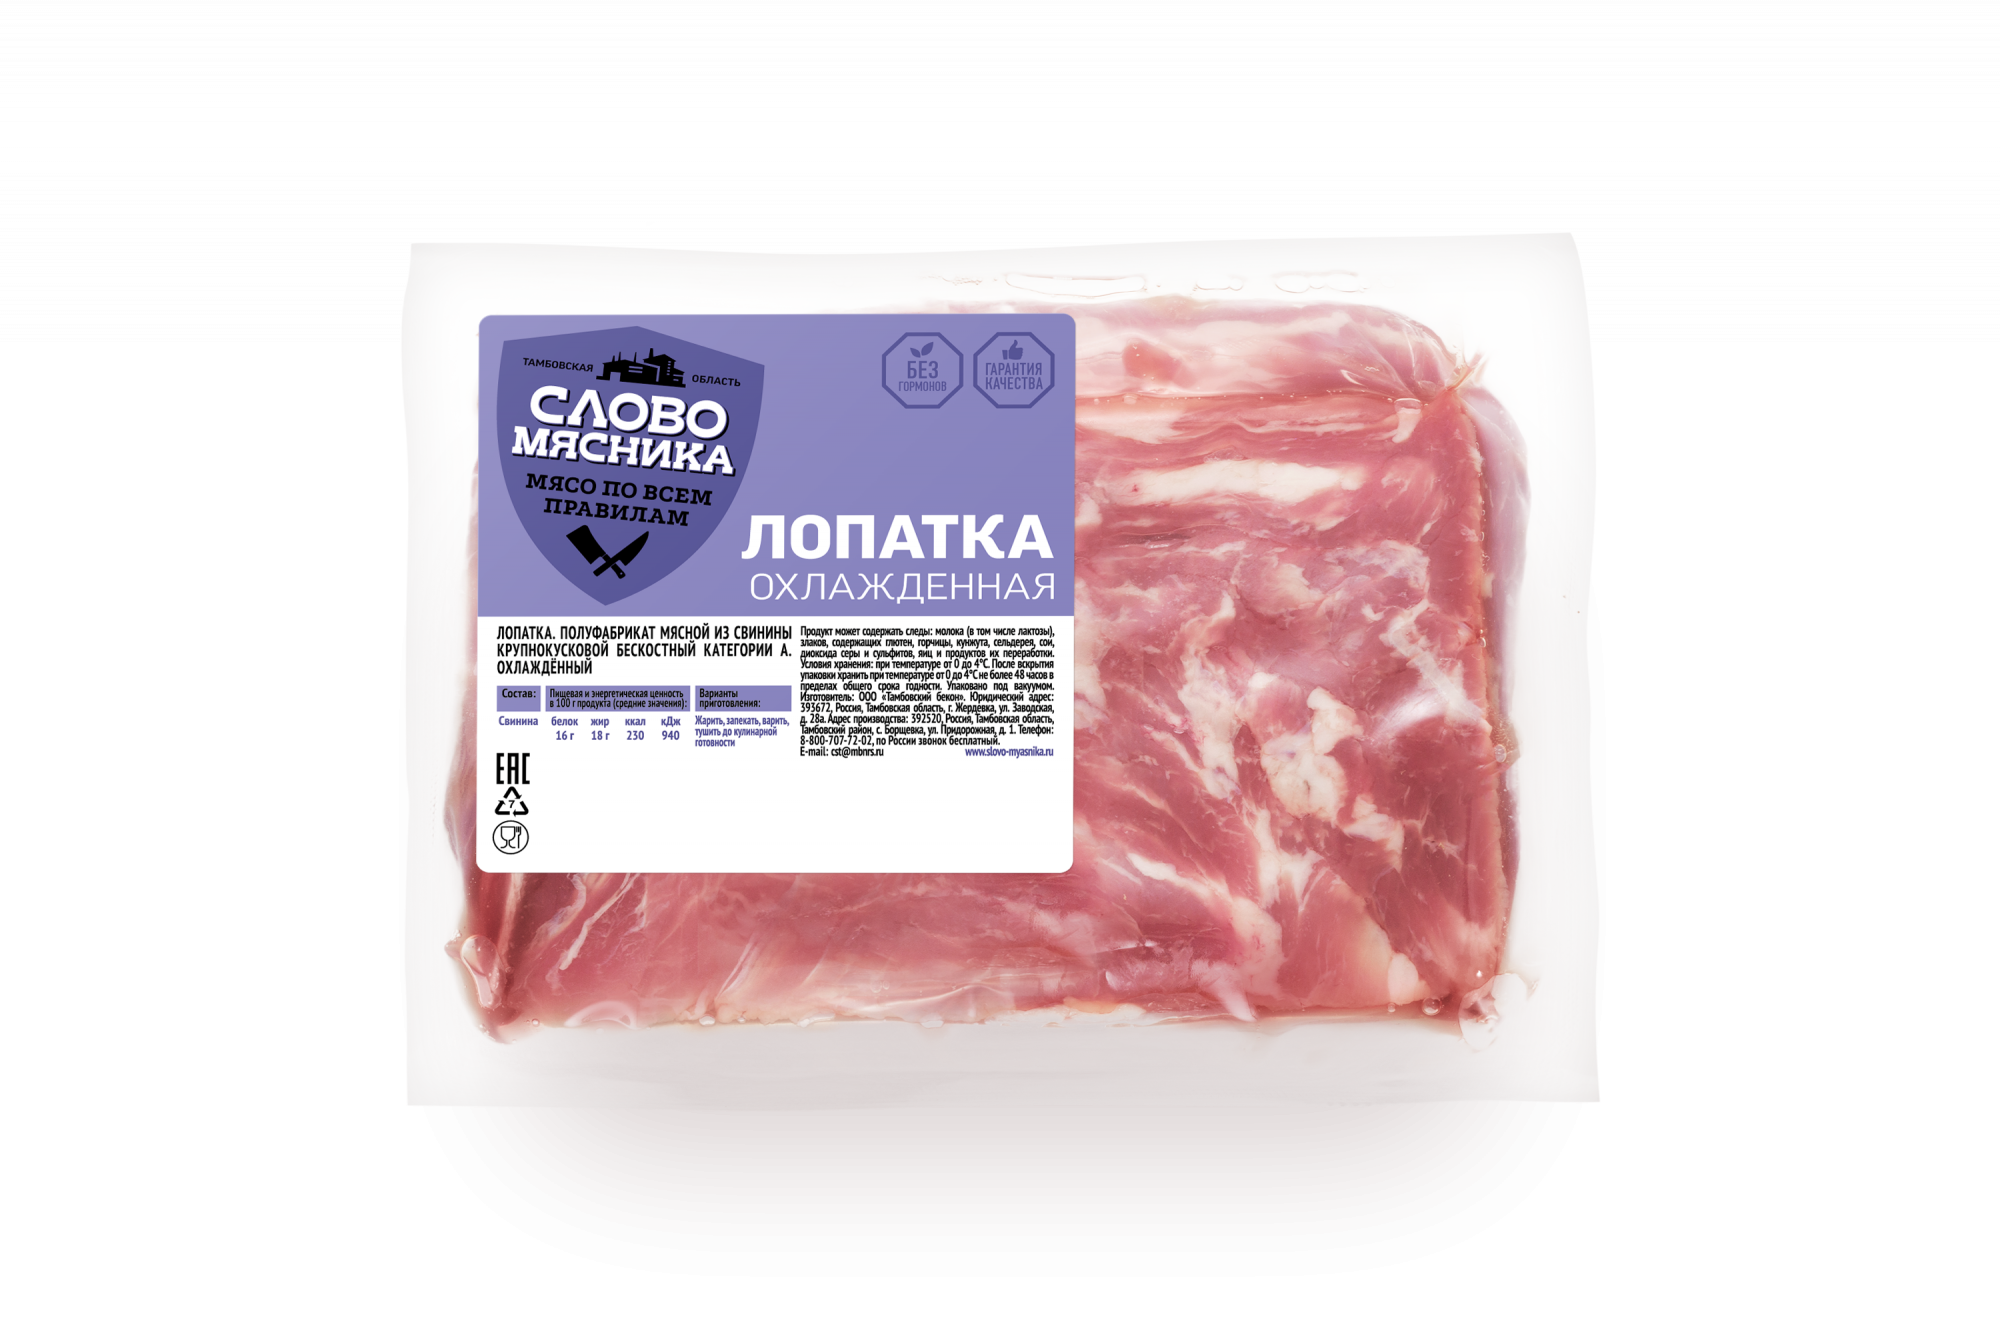 Купить лопатка свиная Слово Мясника категории А охлажденная +-1 кг, цены на Мегамаркет | Артикул: 100045563307